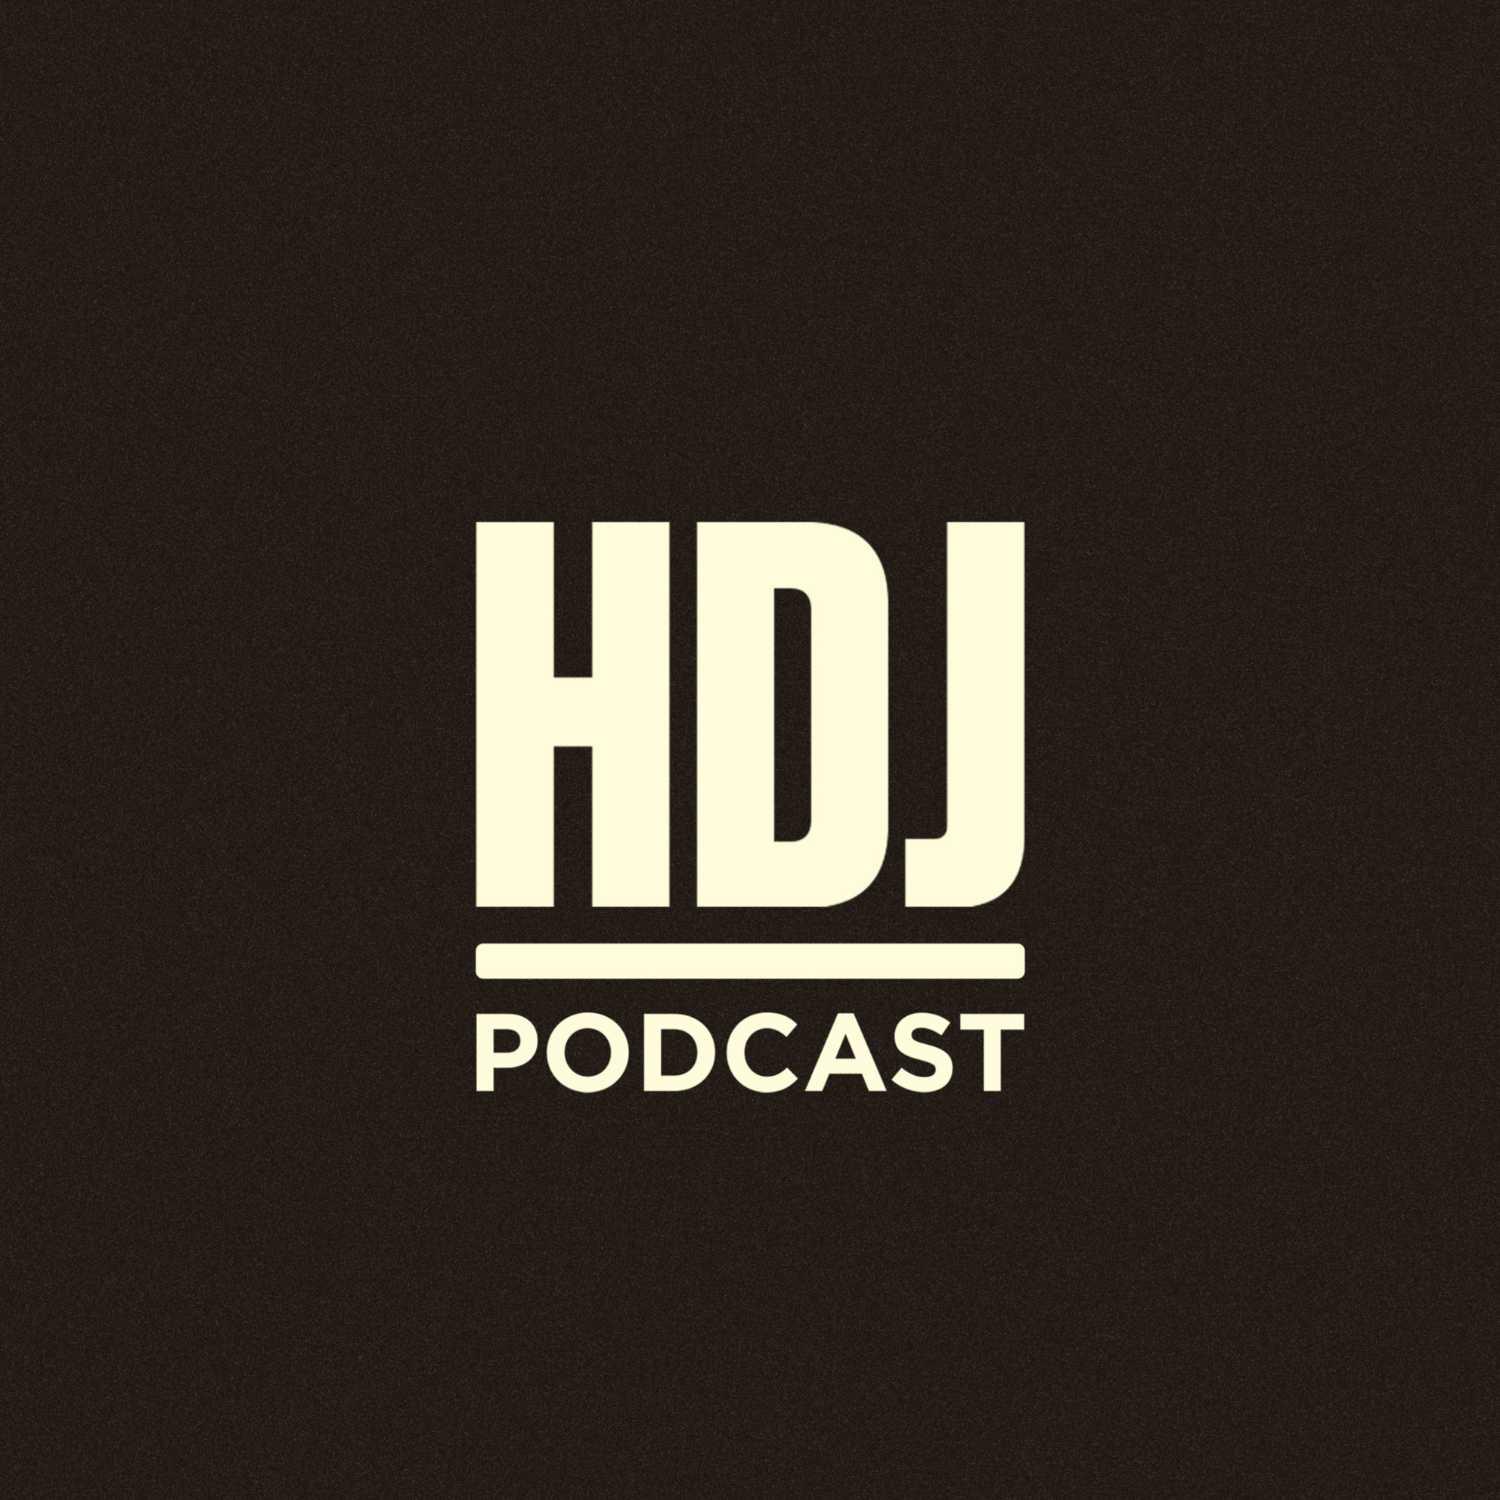 HDJ Podcast